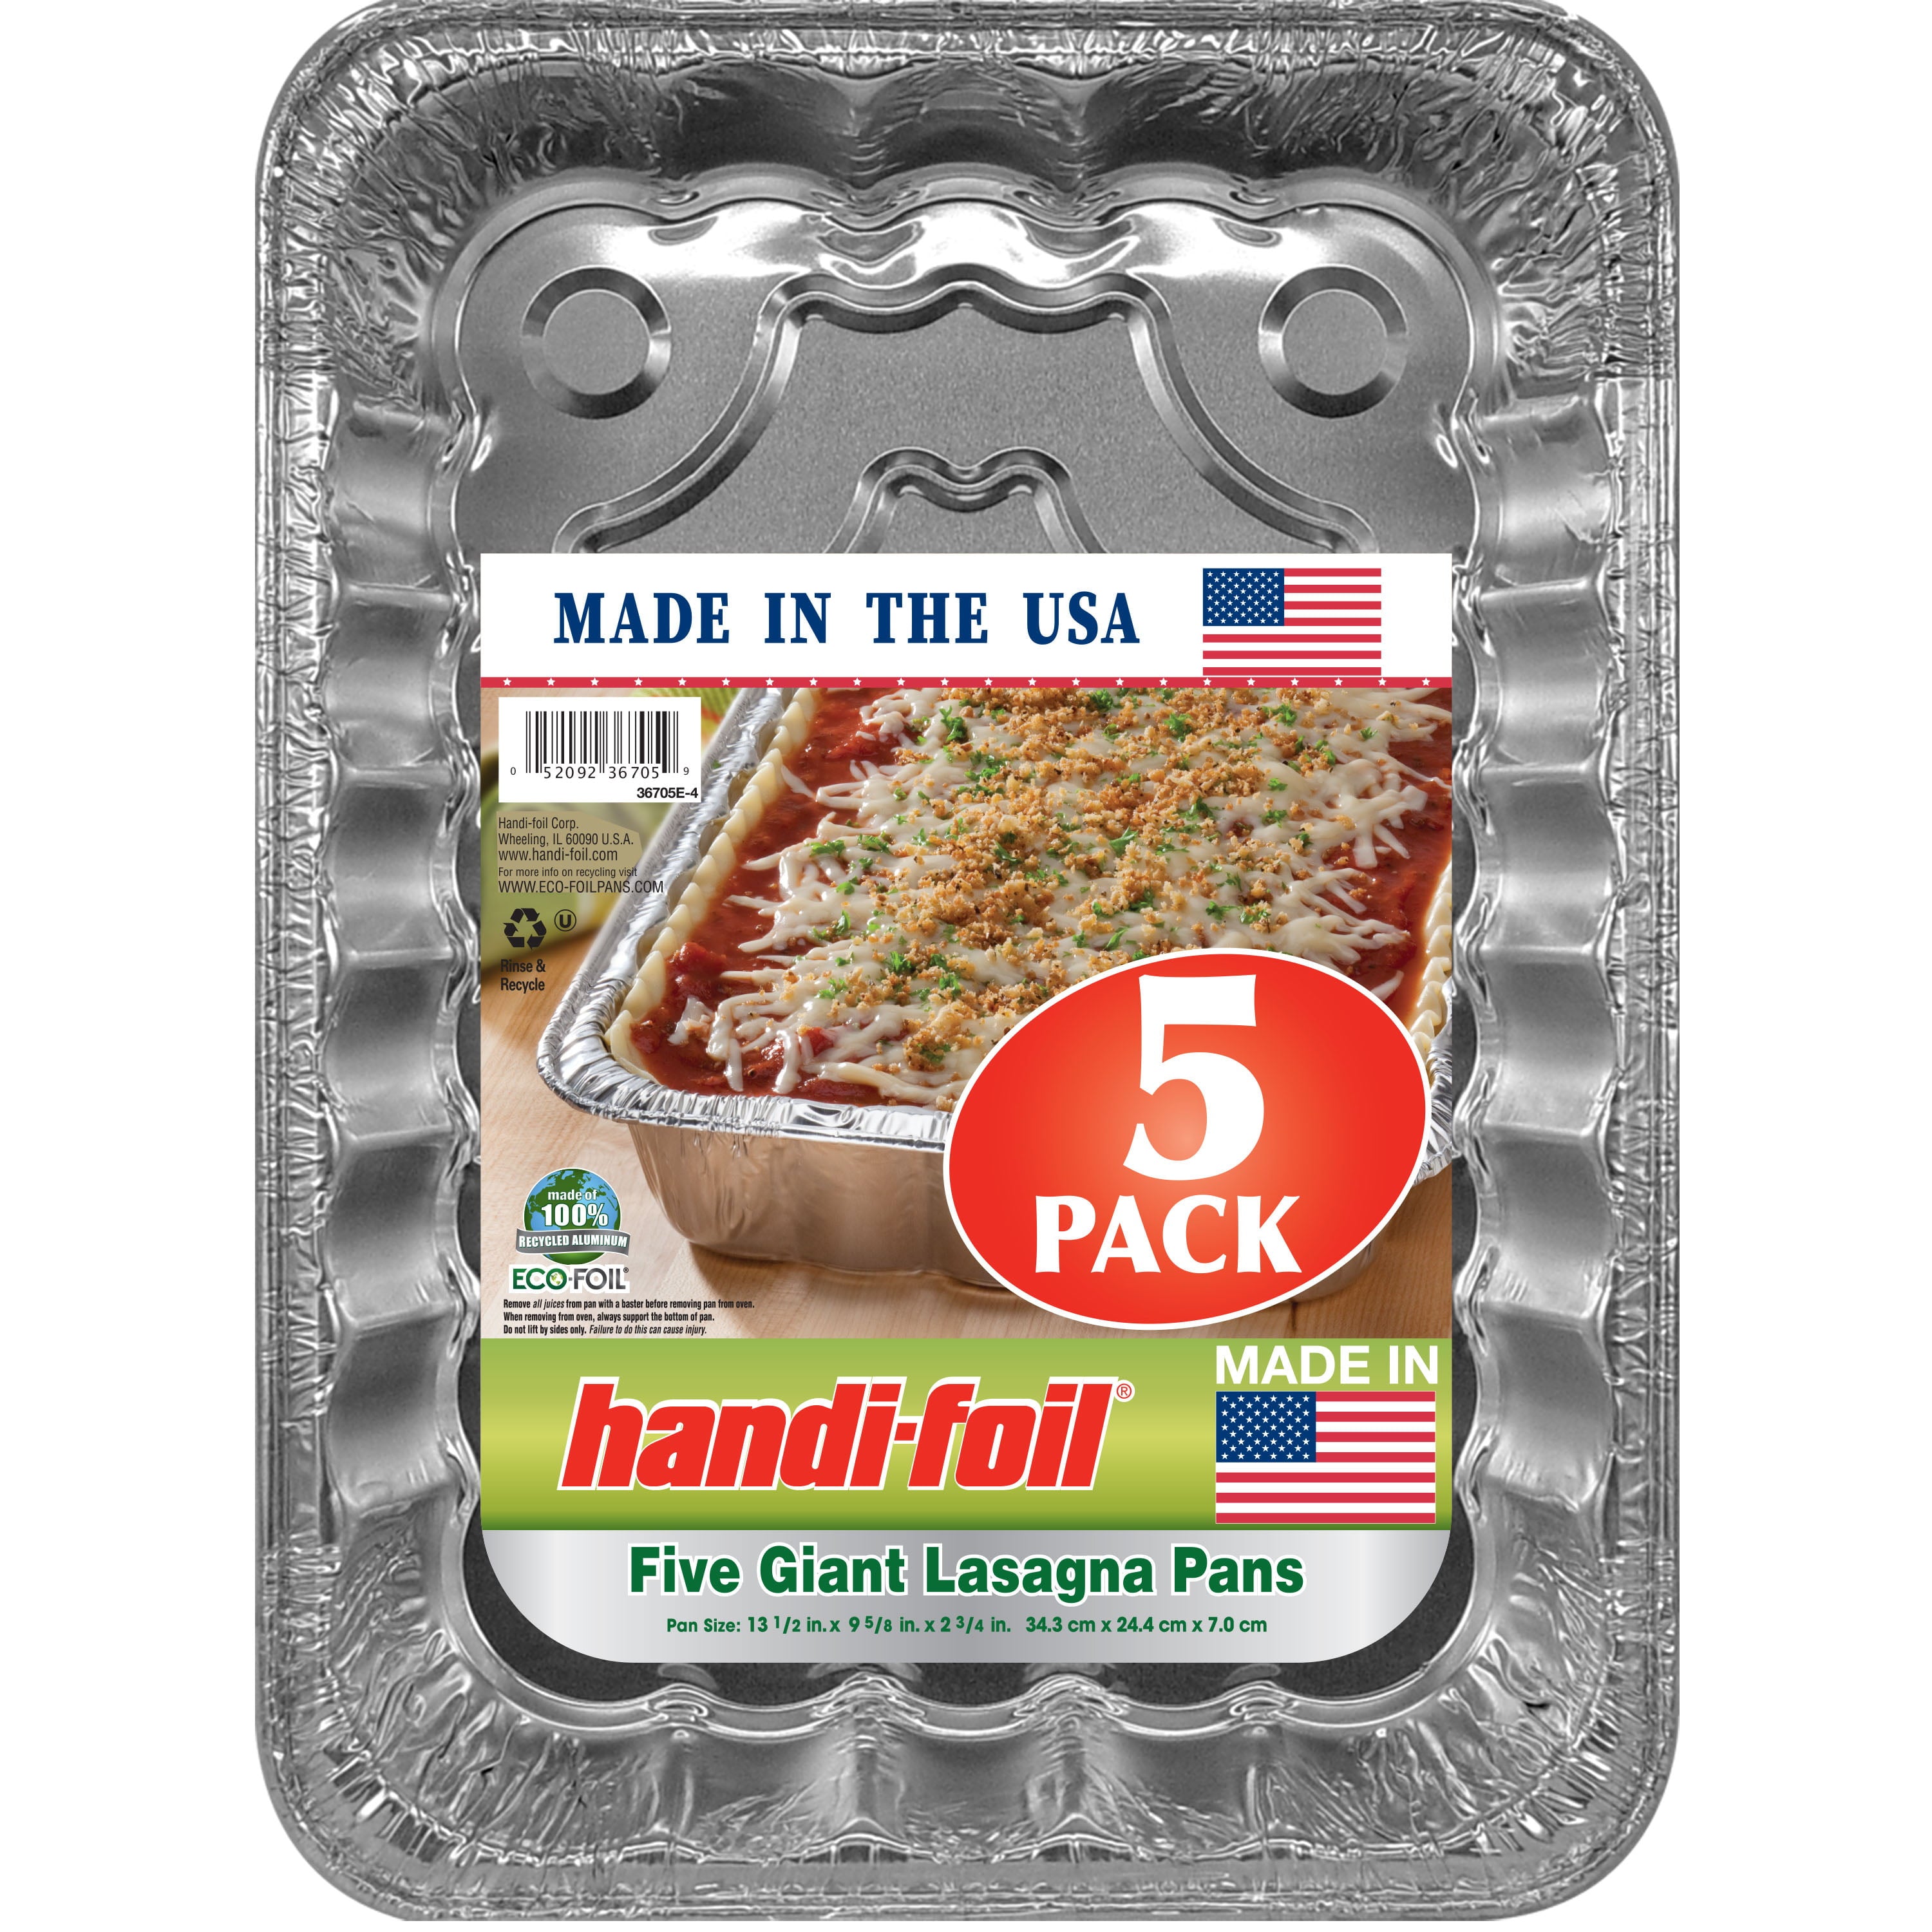 Handi-Foil Eco-Foil Giant Rectangular Aluminum Foil Lasagna Pans Dishes 5 Count